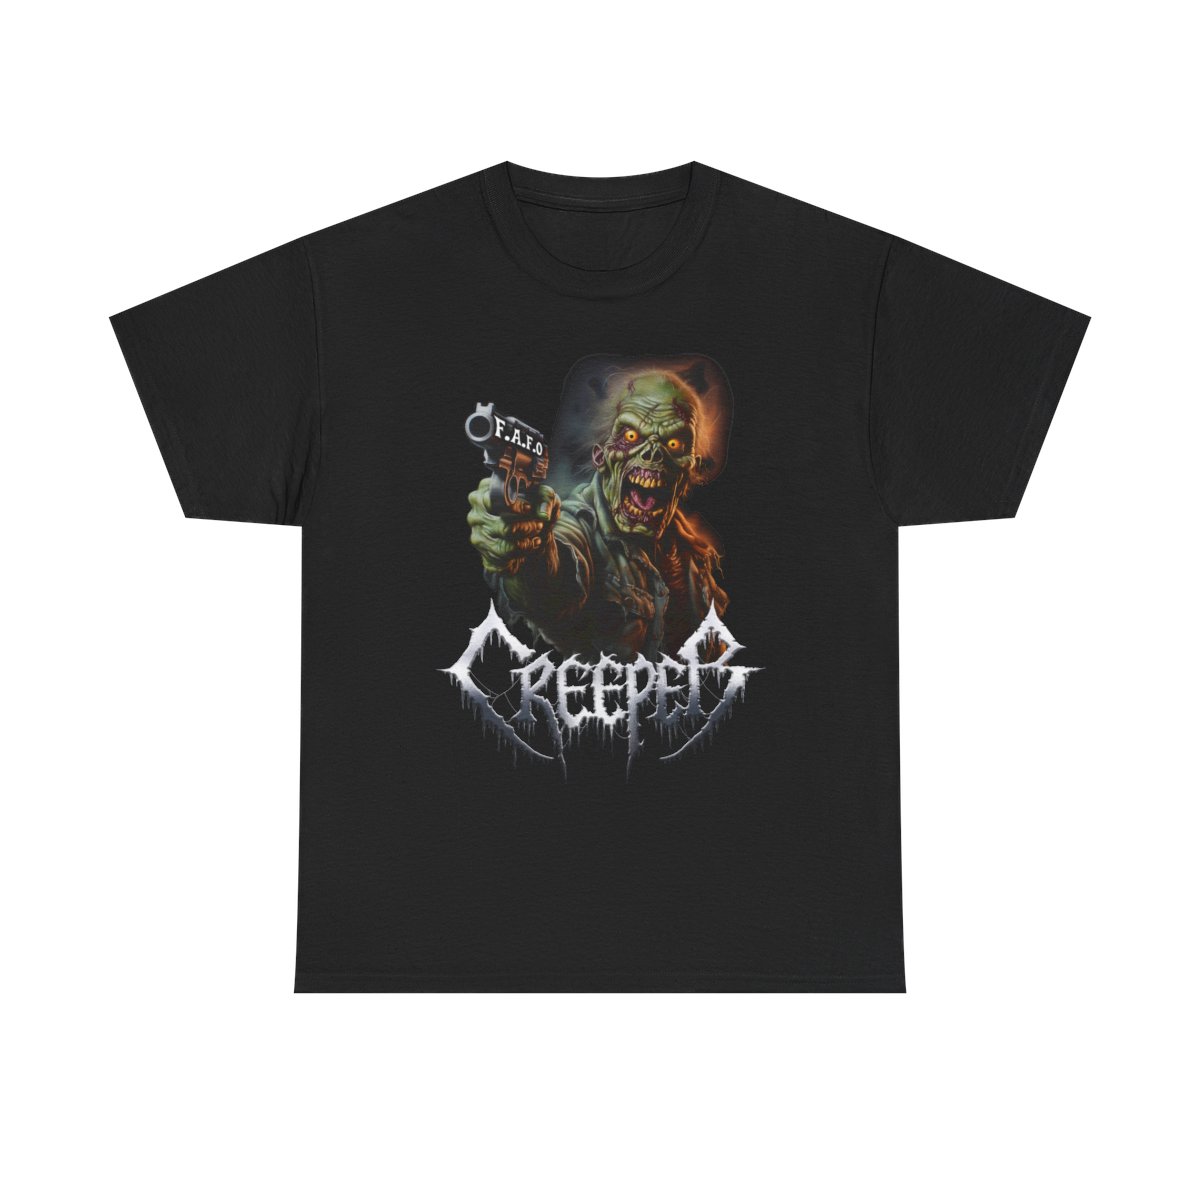 Creeper F.A.F.O. T-shirt product main image